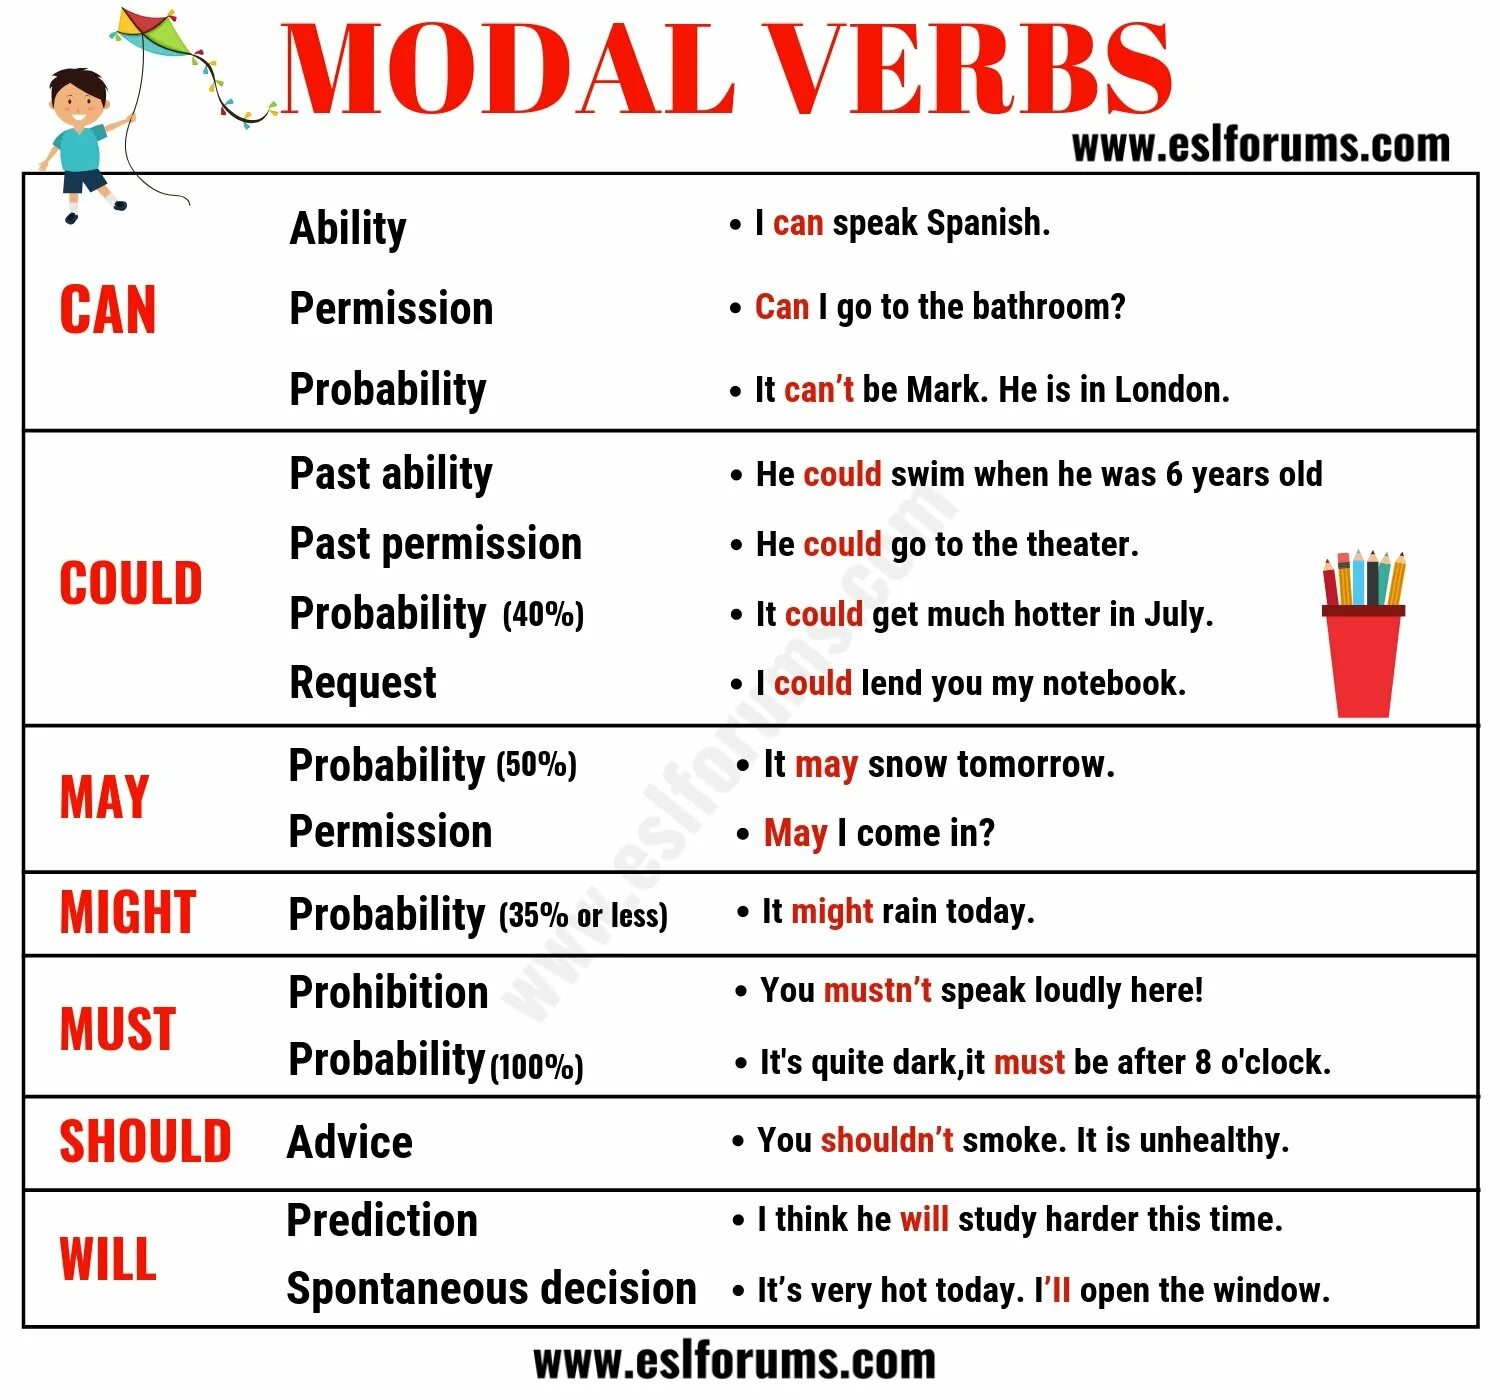 Modal verbs Rules in English. . Modal verbs in English (Модальные глаголы). Modal verbs в английском can. Modal verbs в английском May. Expression shall